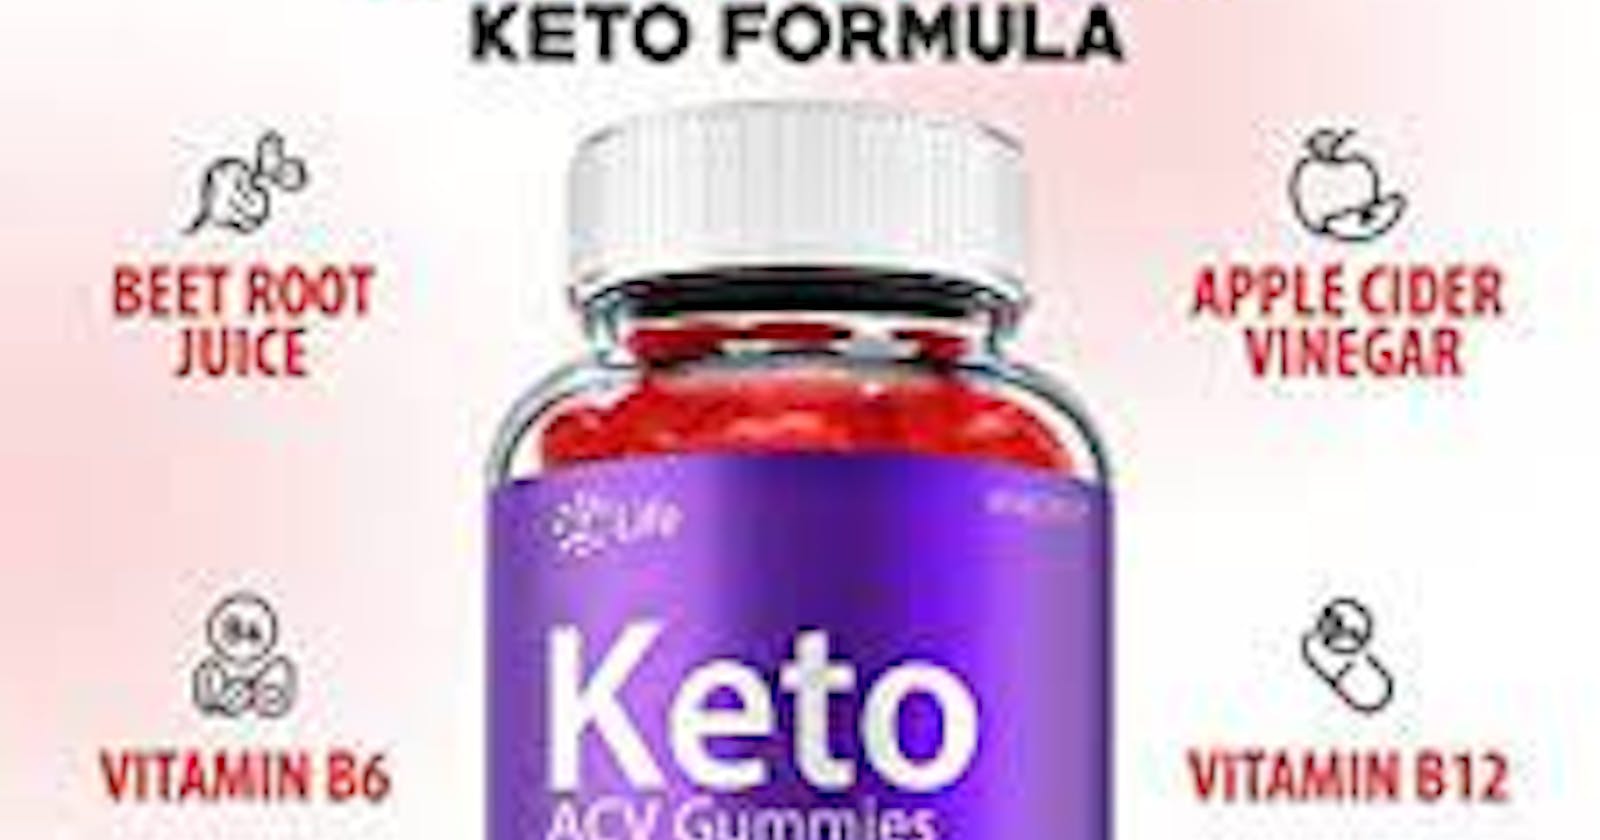 2nd Life Keto ACV Gummies Formula